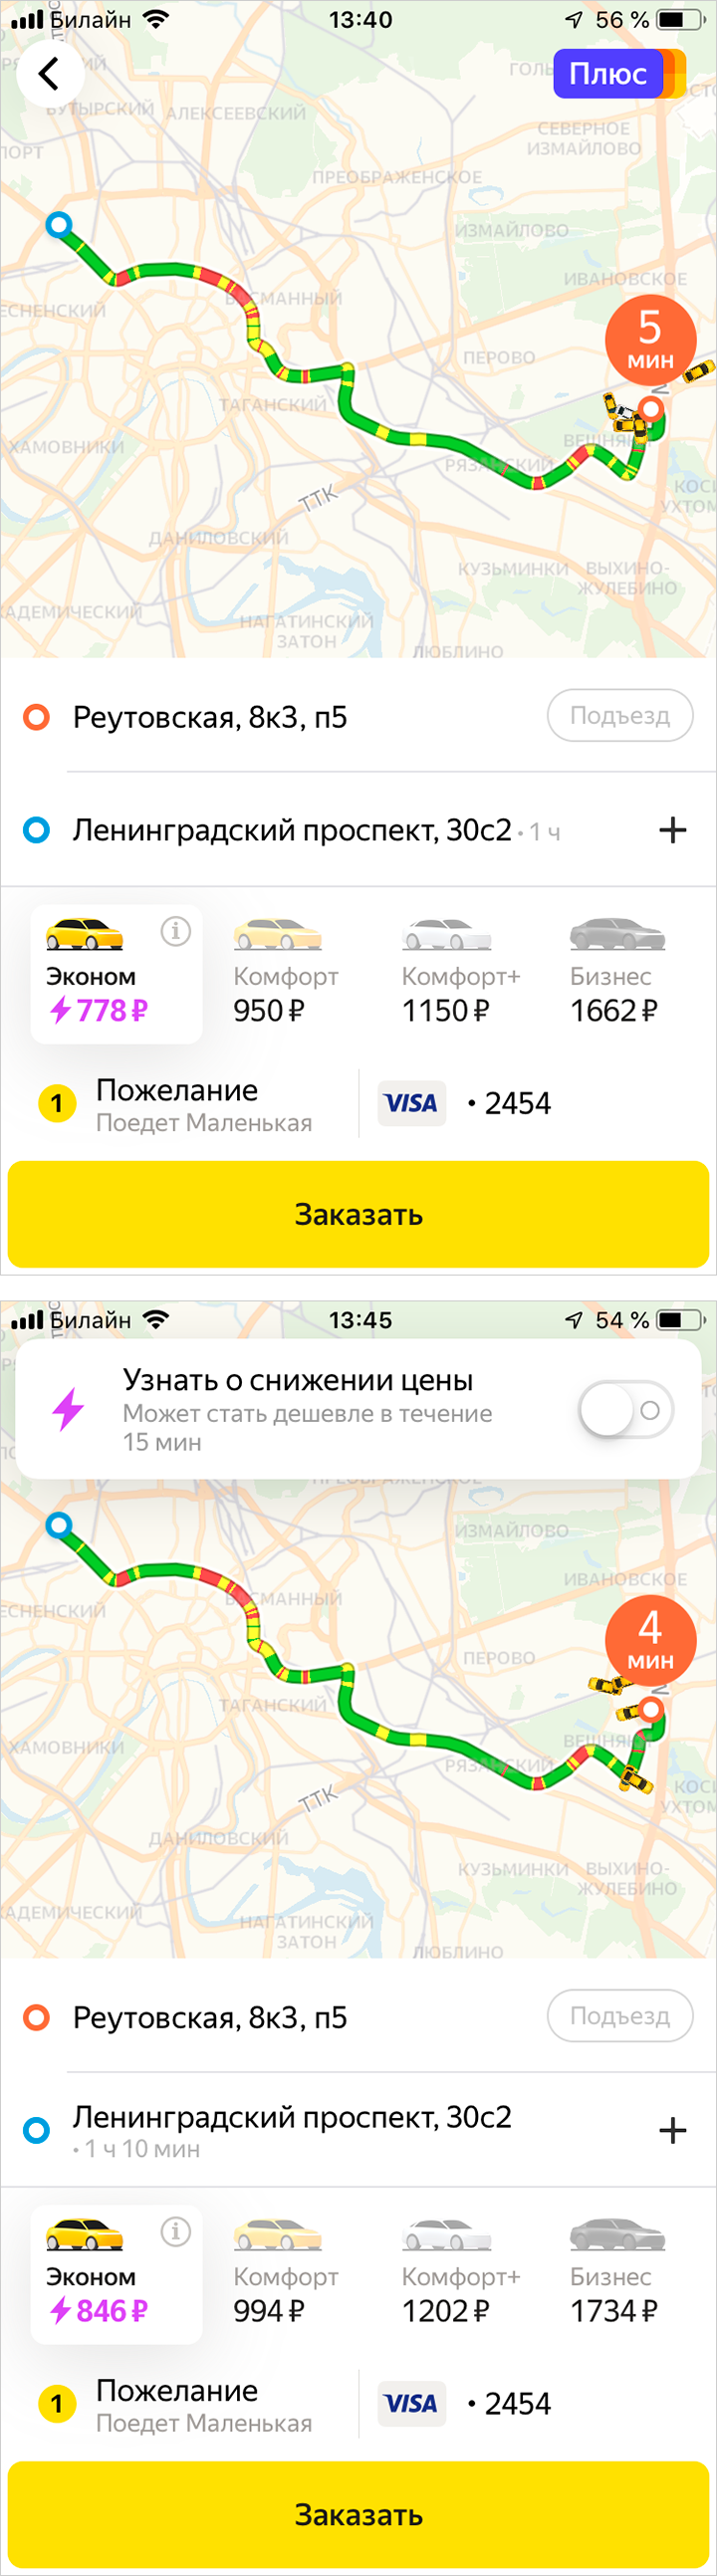 За пять минут цена поездки выросла на 63 <span class=ruble>Р</span>